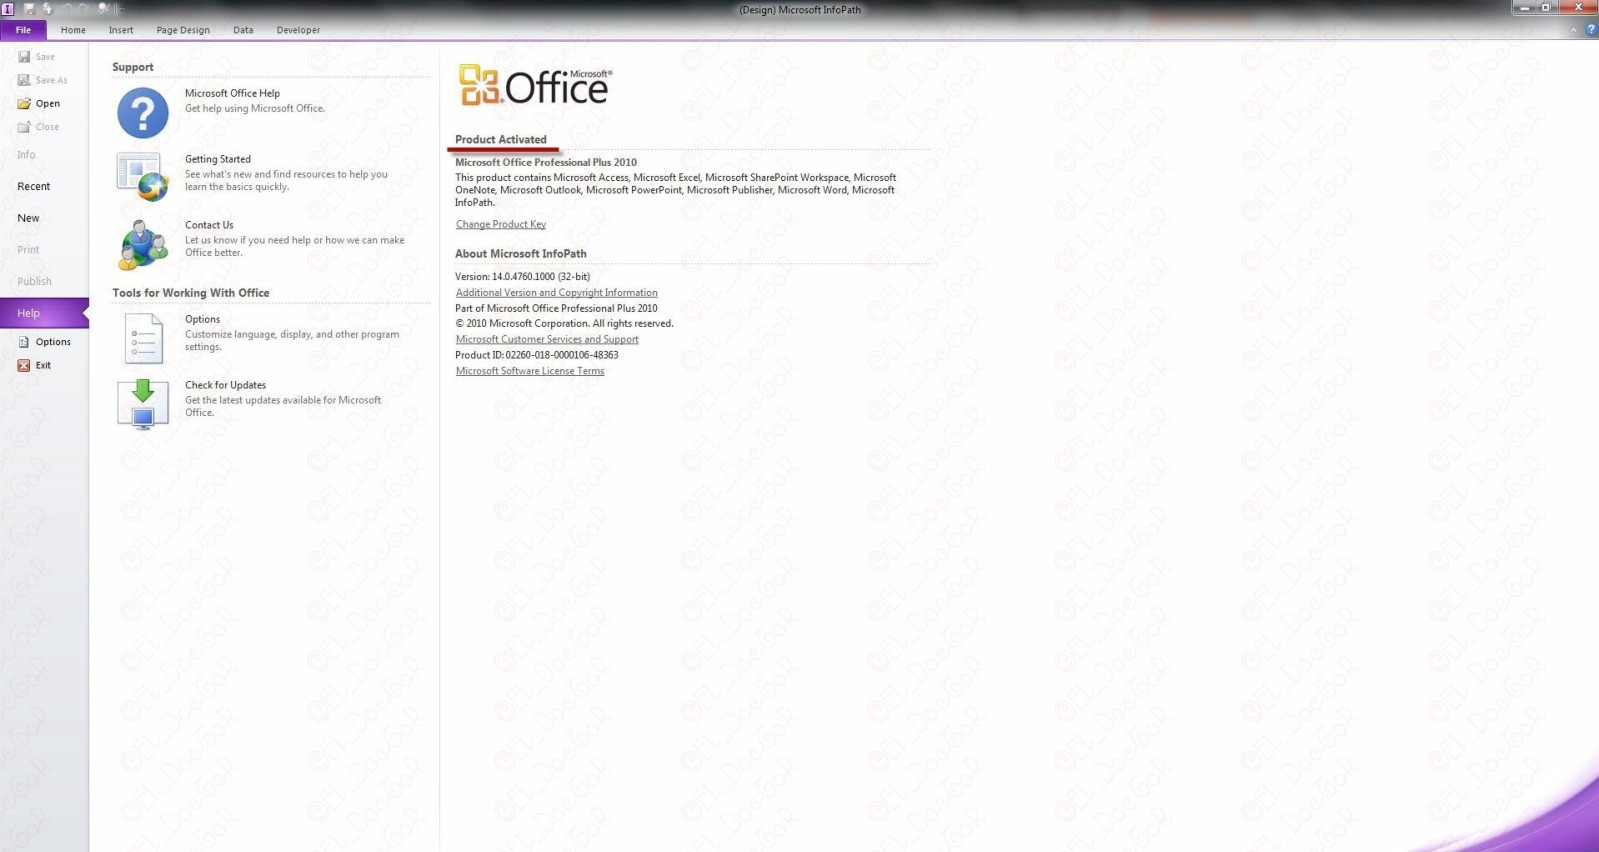  أوفيس 2010 كامل مفعل 100/100::Microsoft Office 2010 Pro Plus ::14.0.4734.1000 :: x86/x64 FINAL + Mini-KMS Servise 1.31 ::بحجم 700 ميجا 311